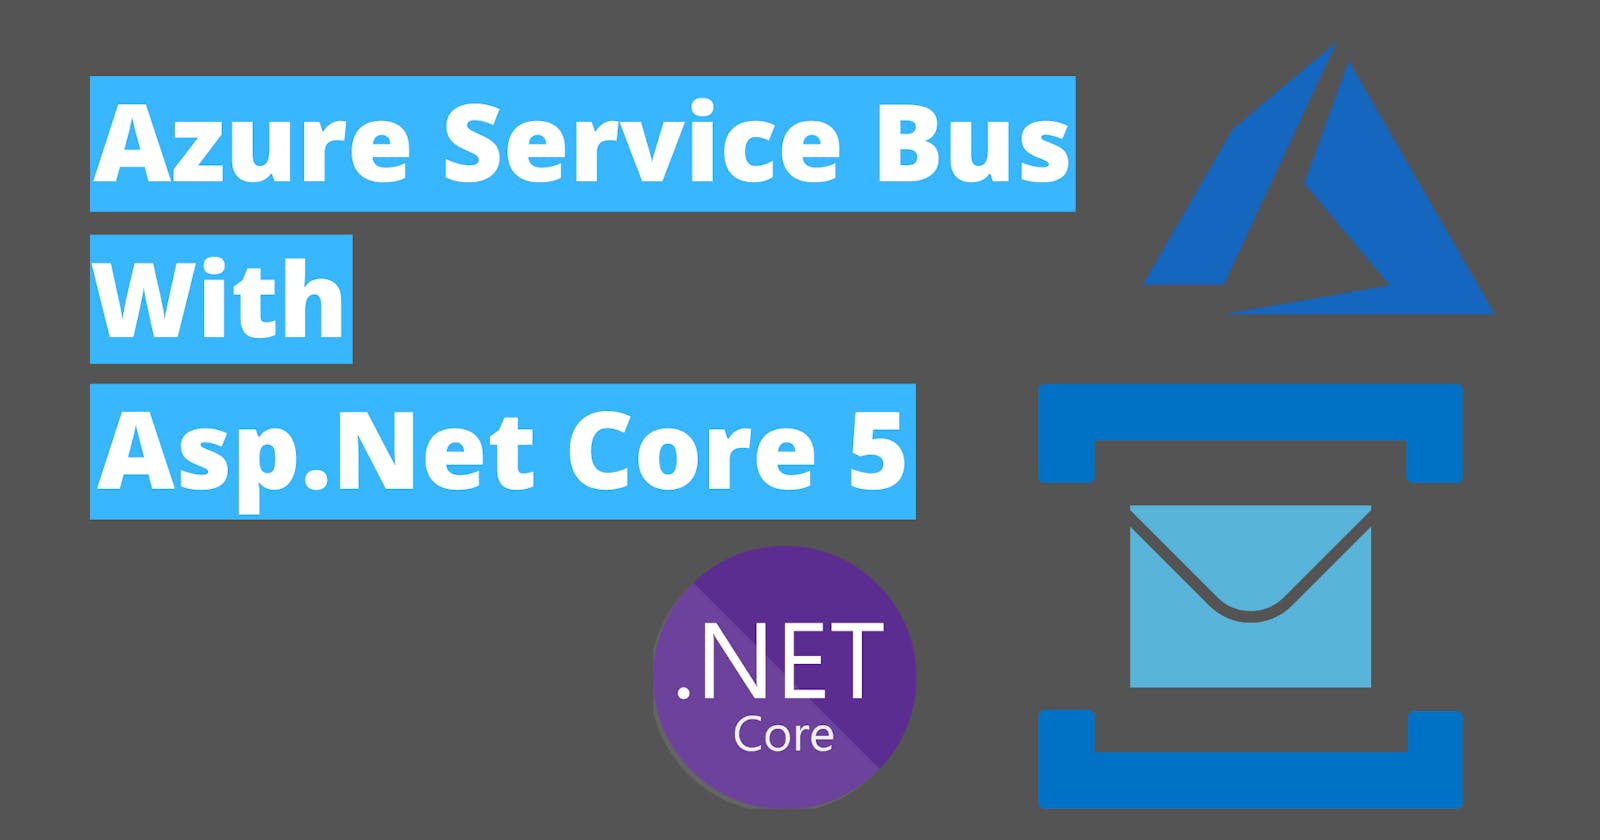 Azure Service Bus with Asp.Net Core 5